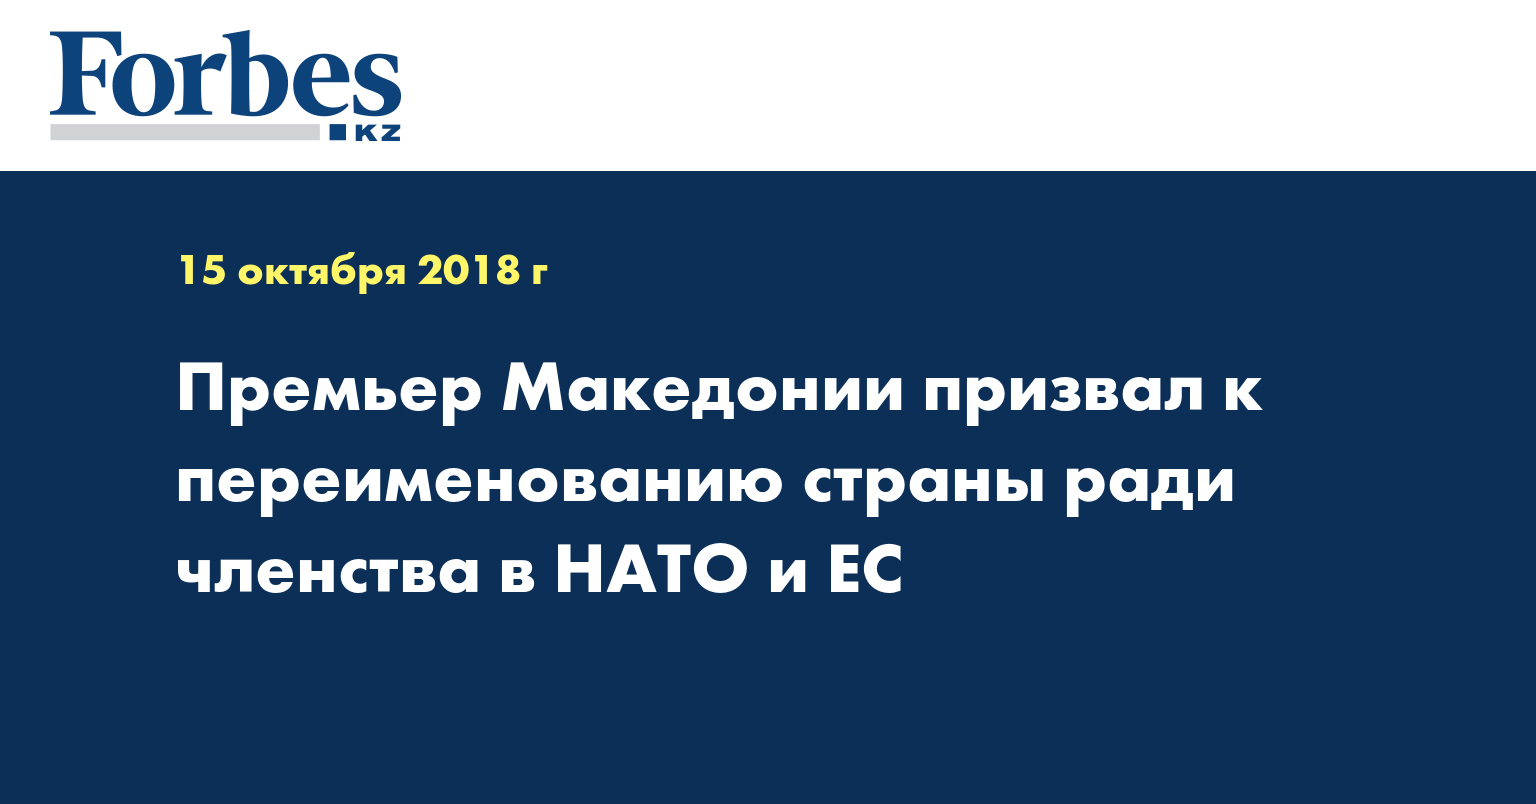 Премьер Македонии призвал к переименованию страны ради членства в НАТО и ЕС